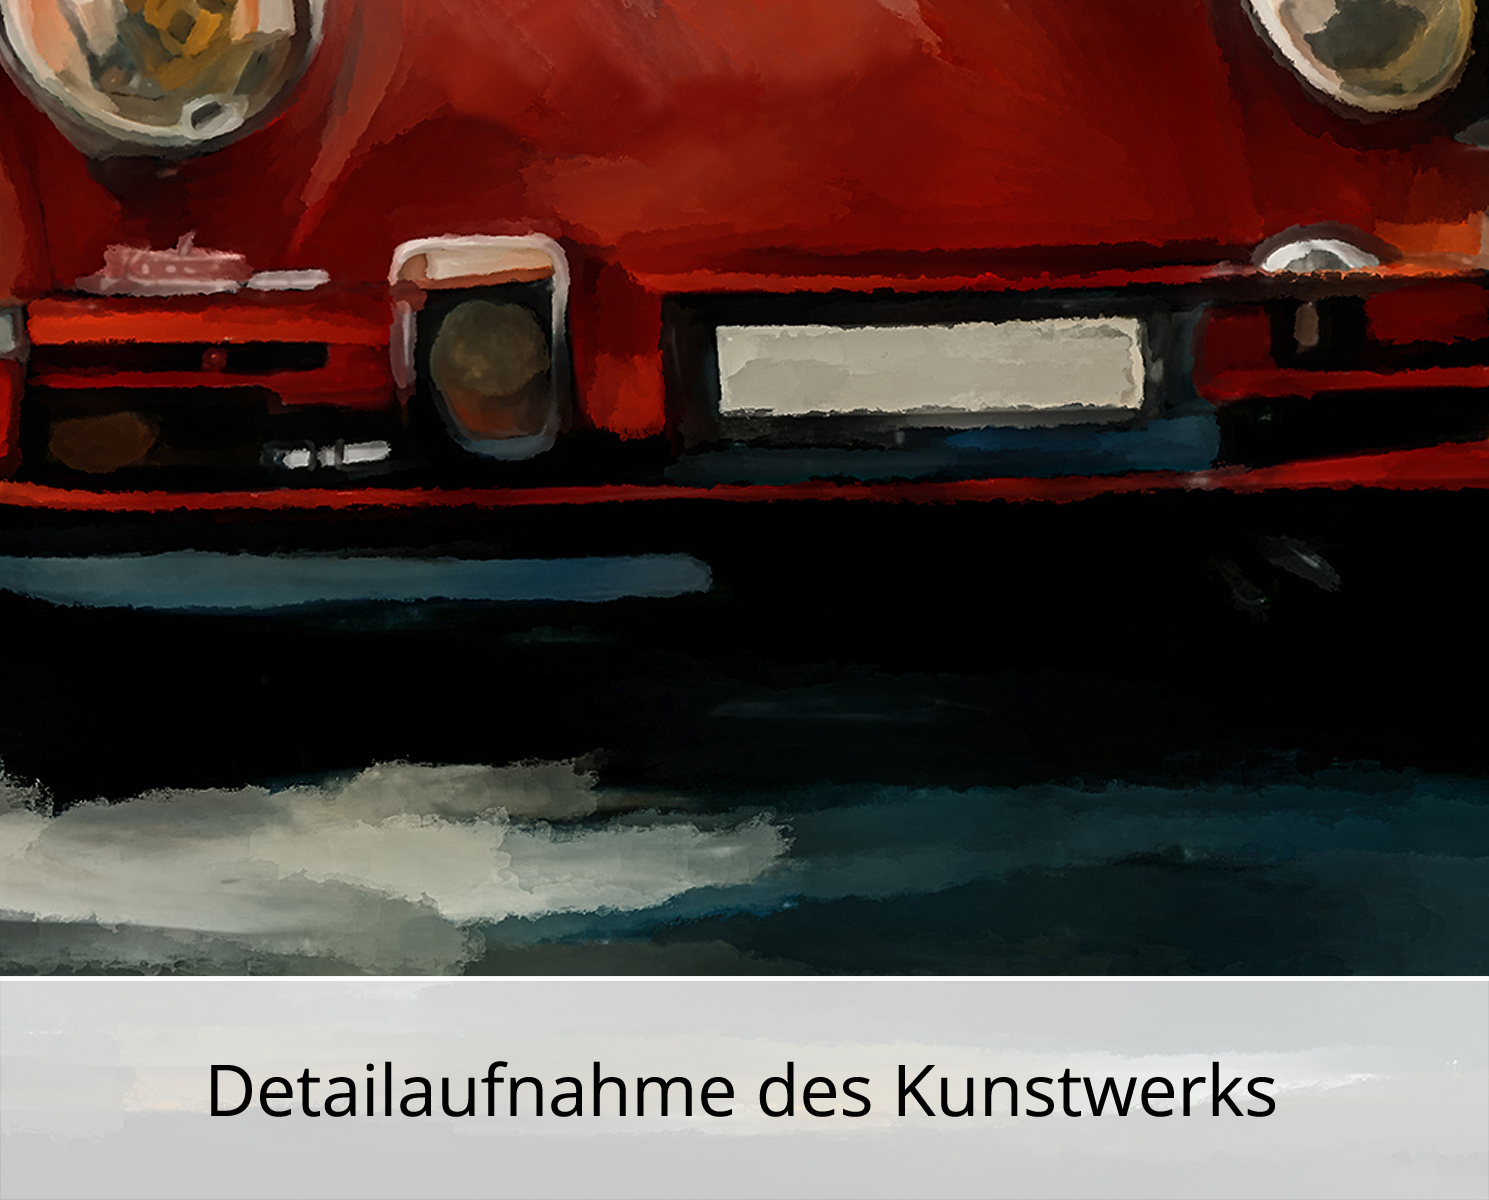 H. Mühlbauer-Gardemin: "Roter Porsche", Moderne Pop Art, Original/serielles Unikat